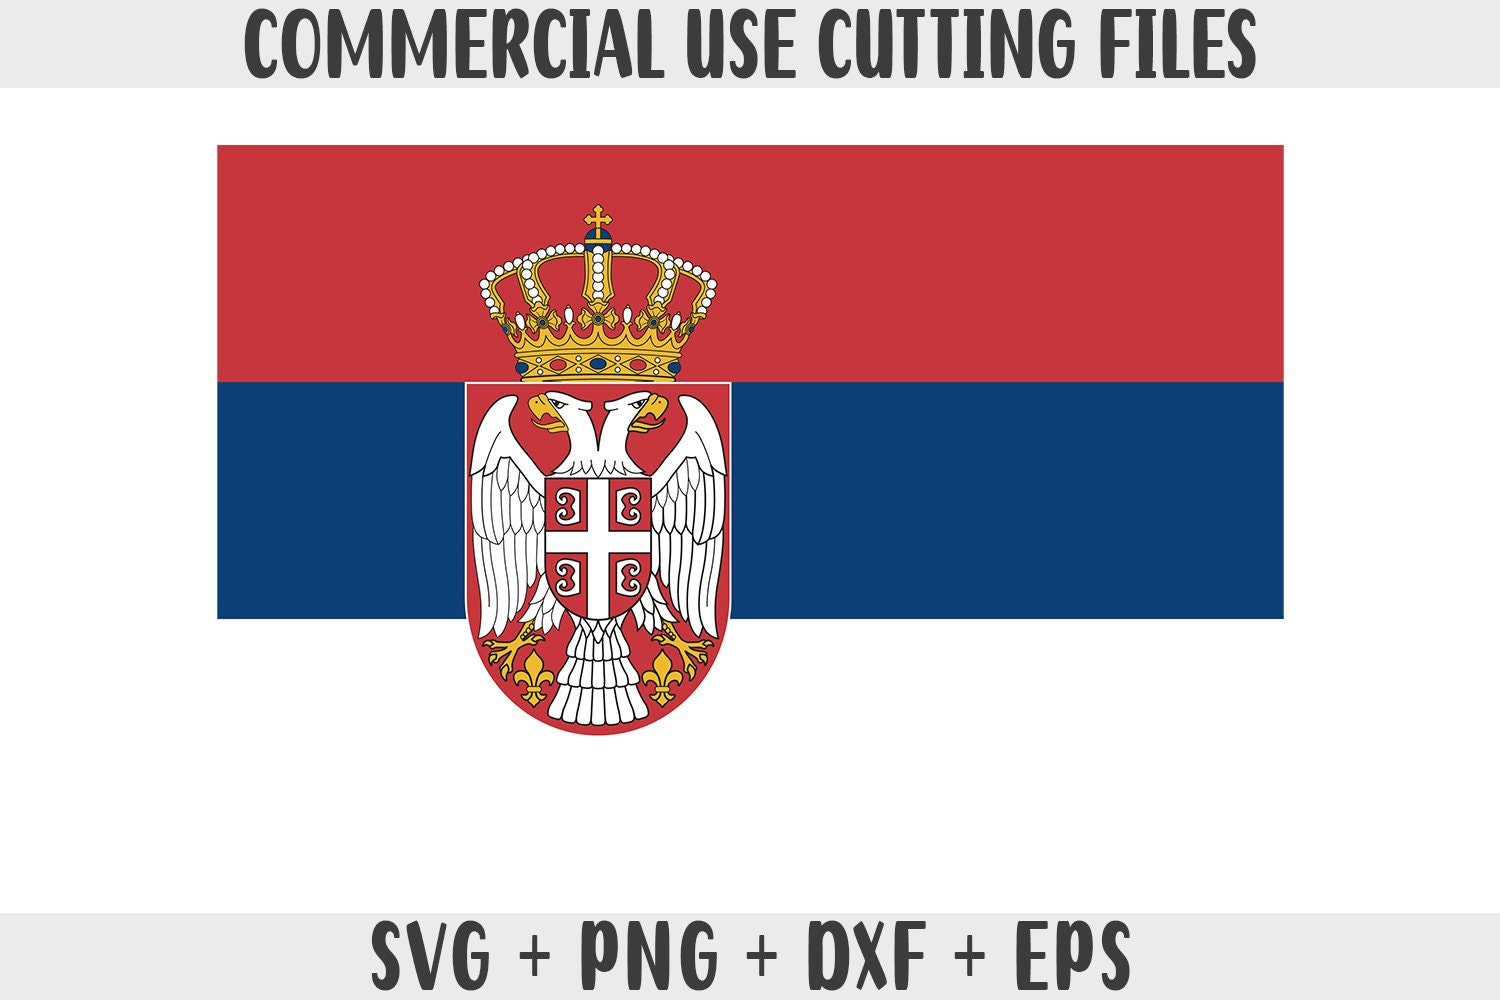 FK Crvena zvezda Logo PNG Vector (SVG) Free Download